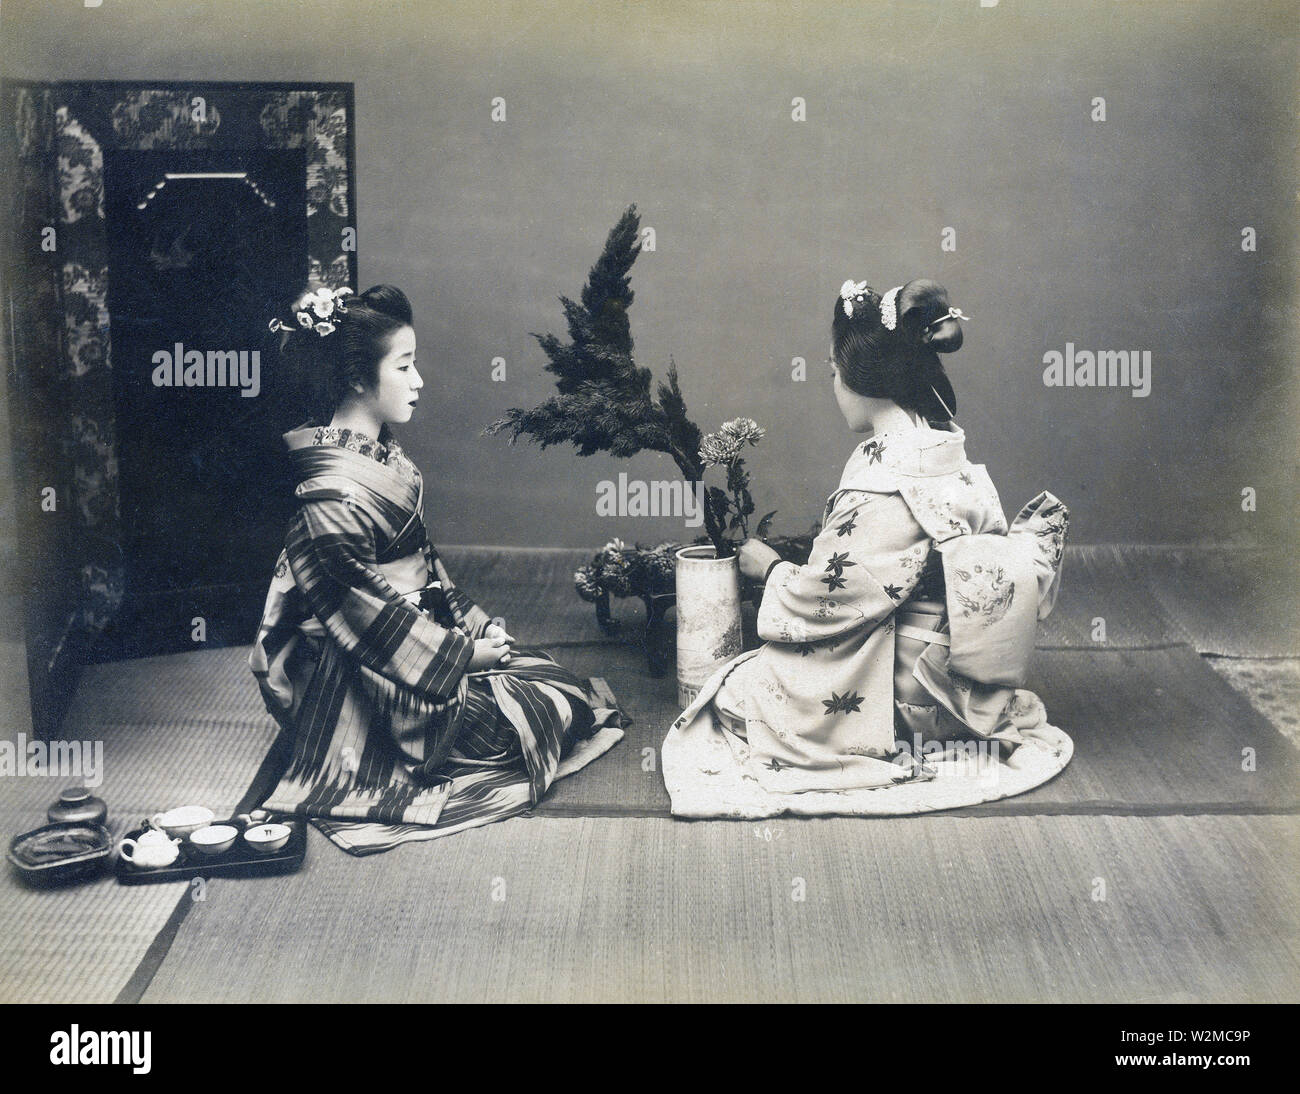 [1880s Japan - Japanische Frauen üben Ikebana Flower Arrangement] - zwei Frauen im Kimono und traditionellen Frisuren üben Ikebana Flower Arrangement. 19 Vintage albumen Foto. Stockfoto